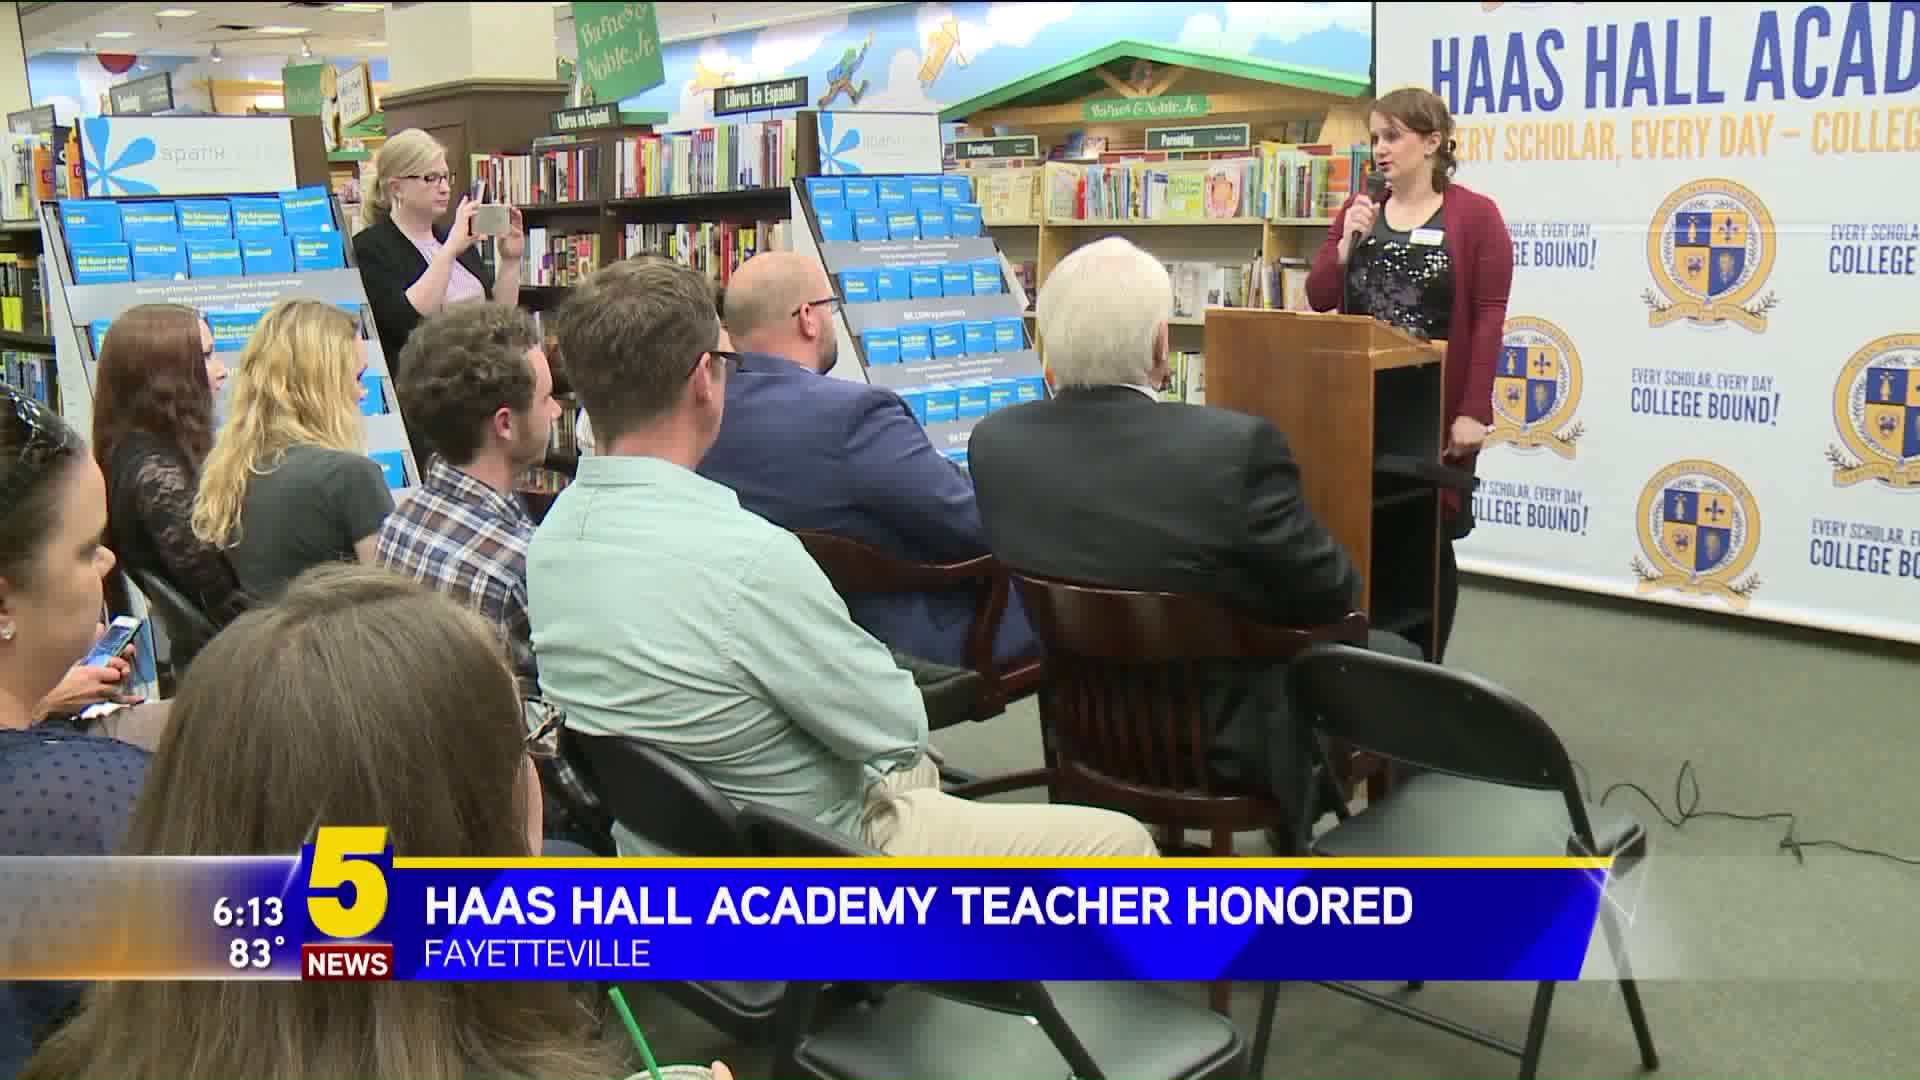 Haas Hall Academy Teacher Honored